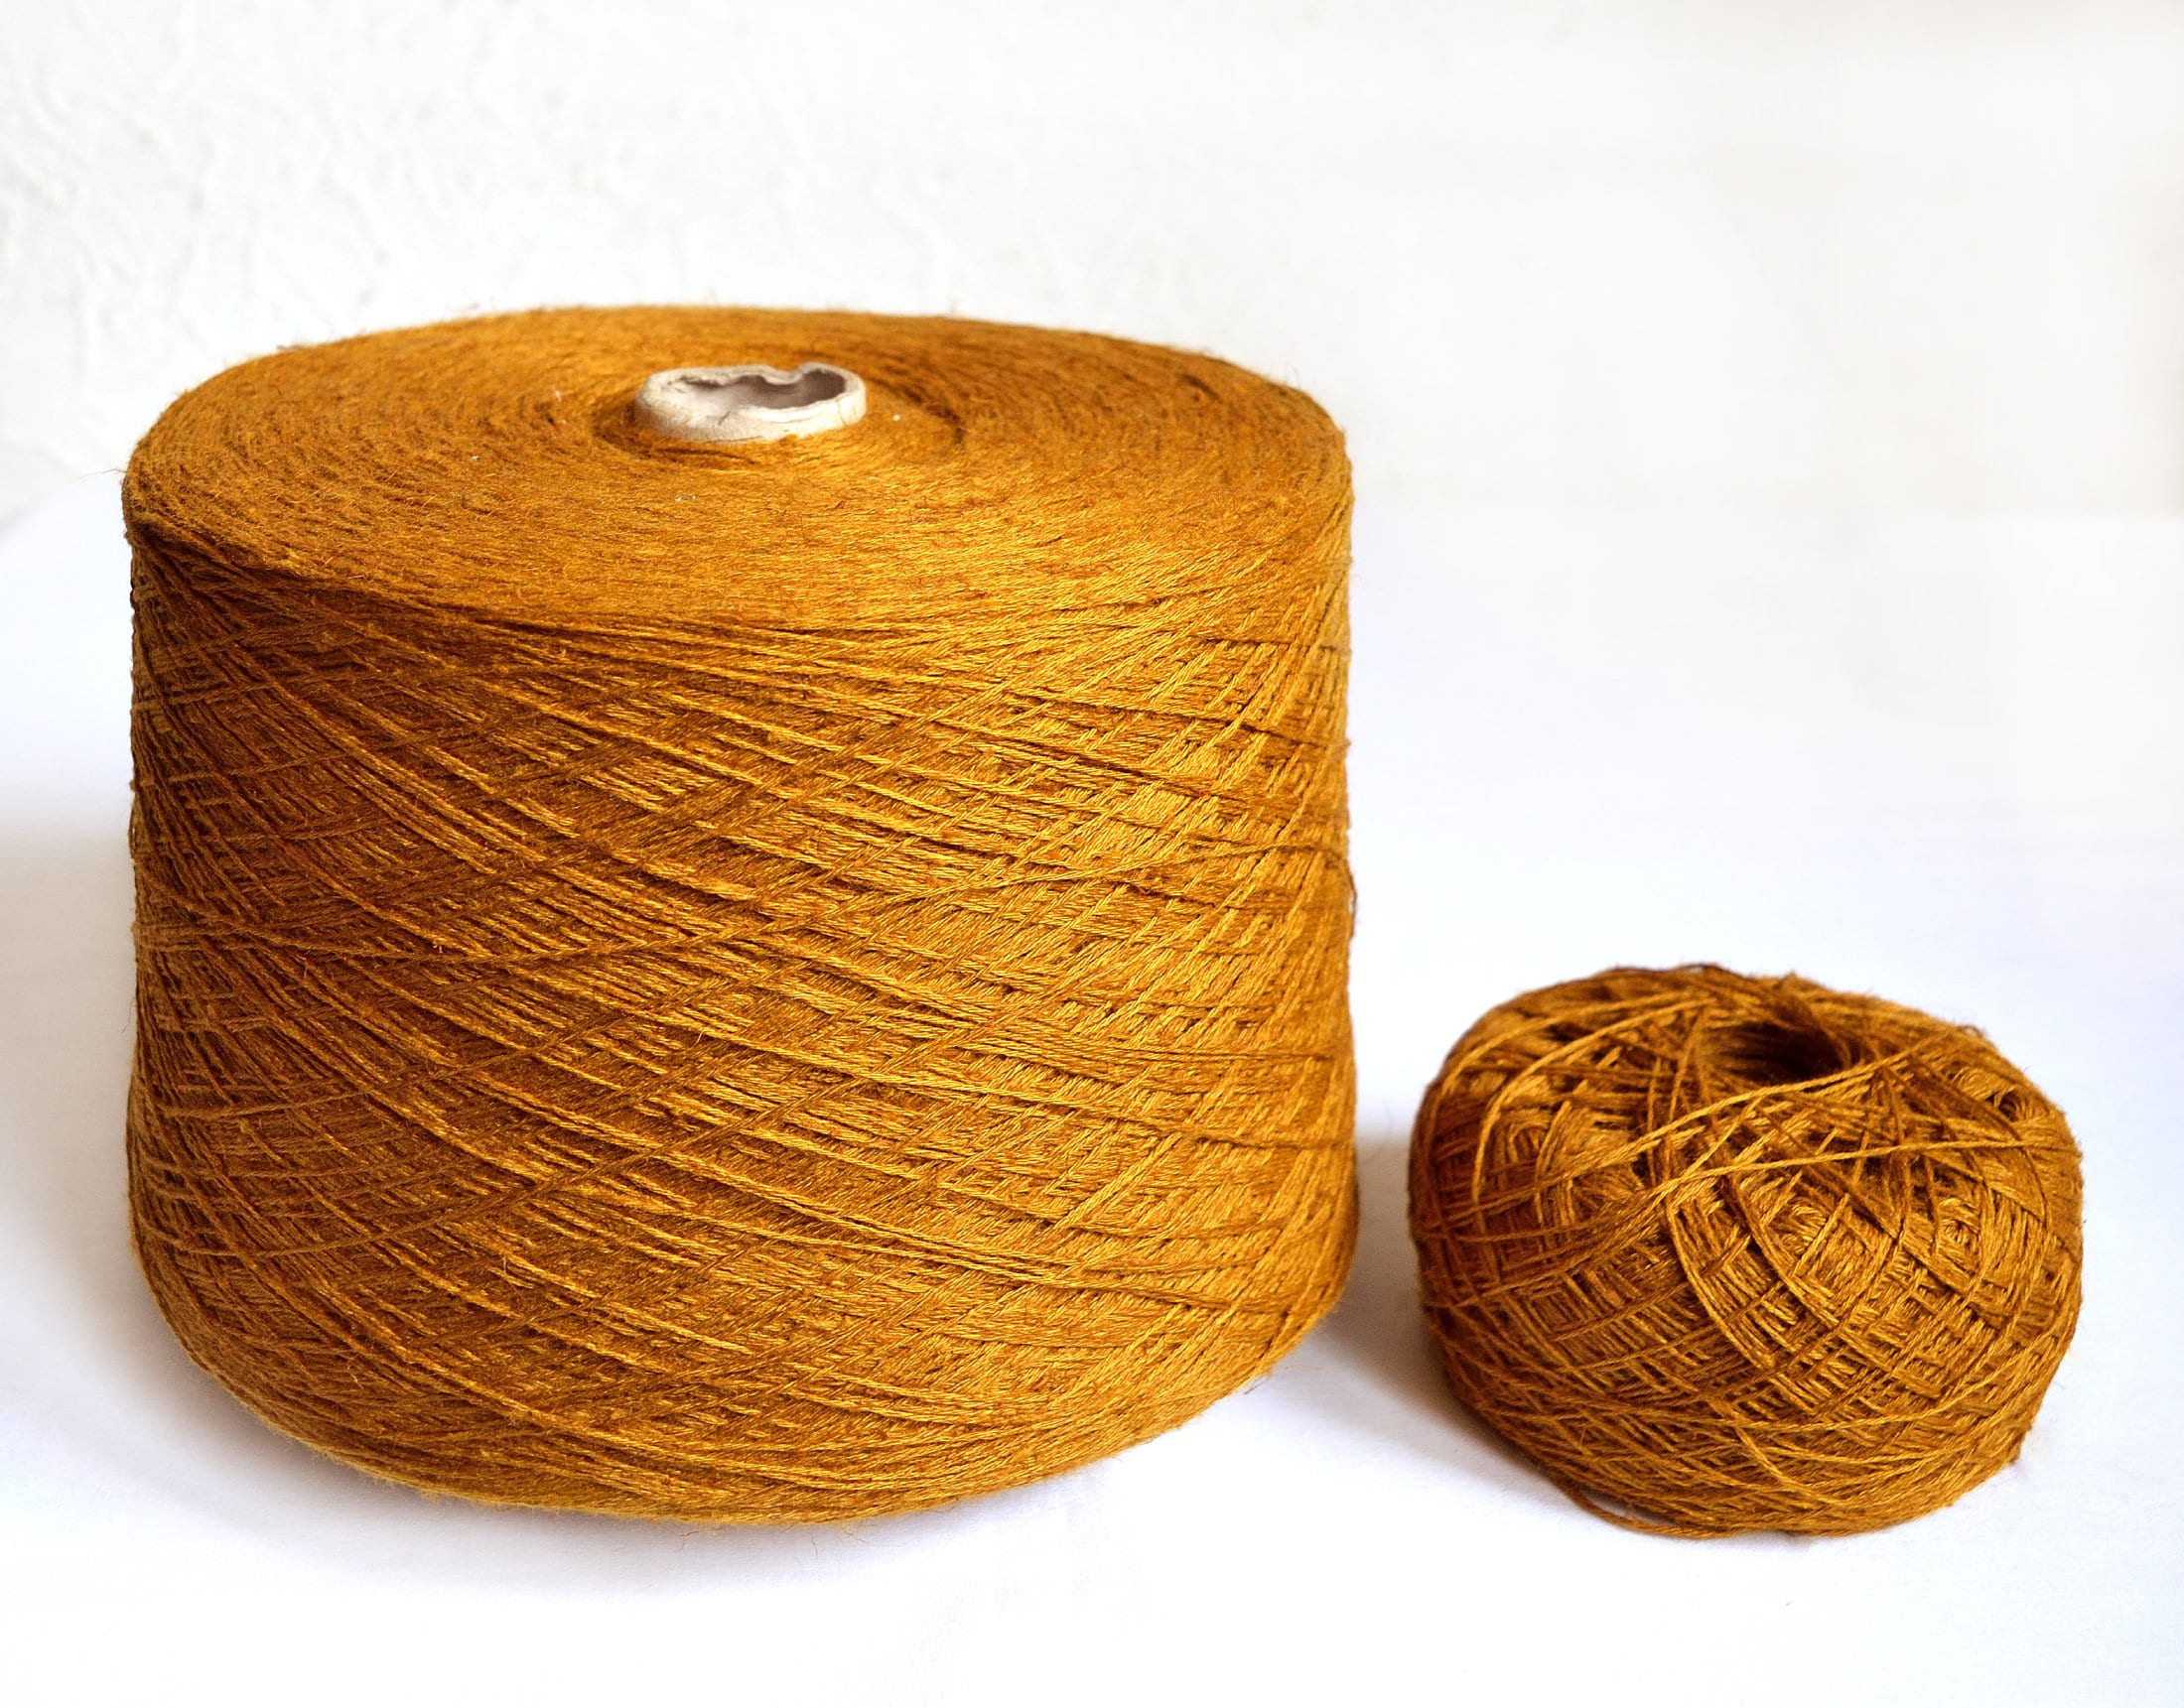 ThreadWorX Overdyed Italian Wool